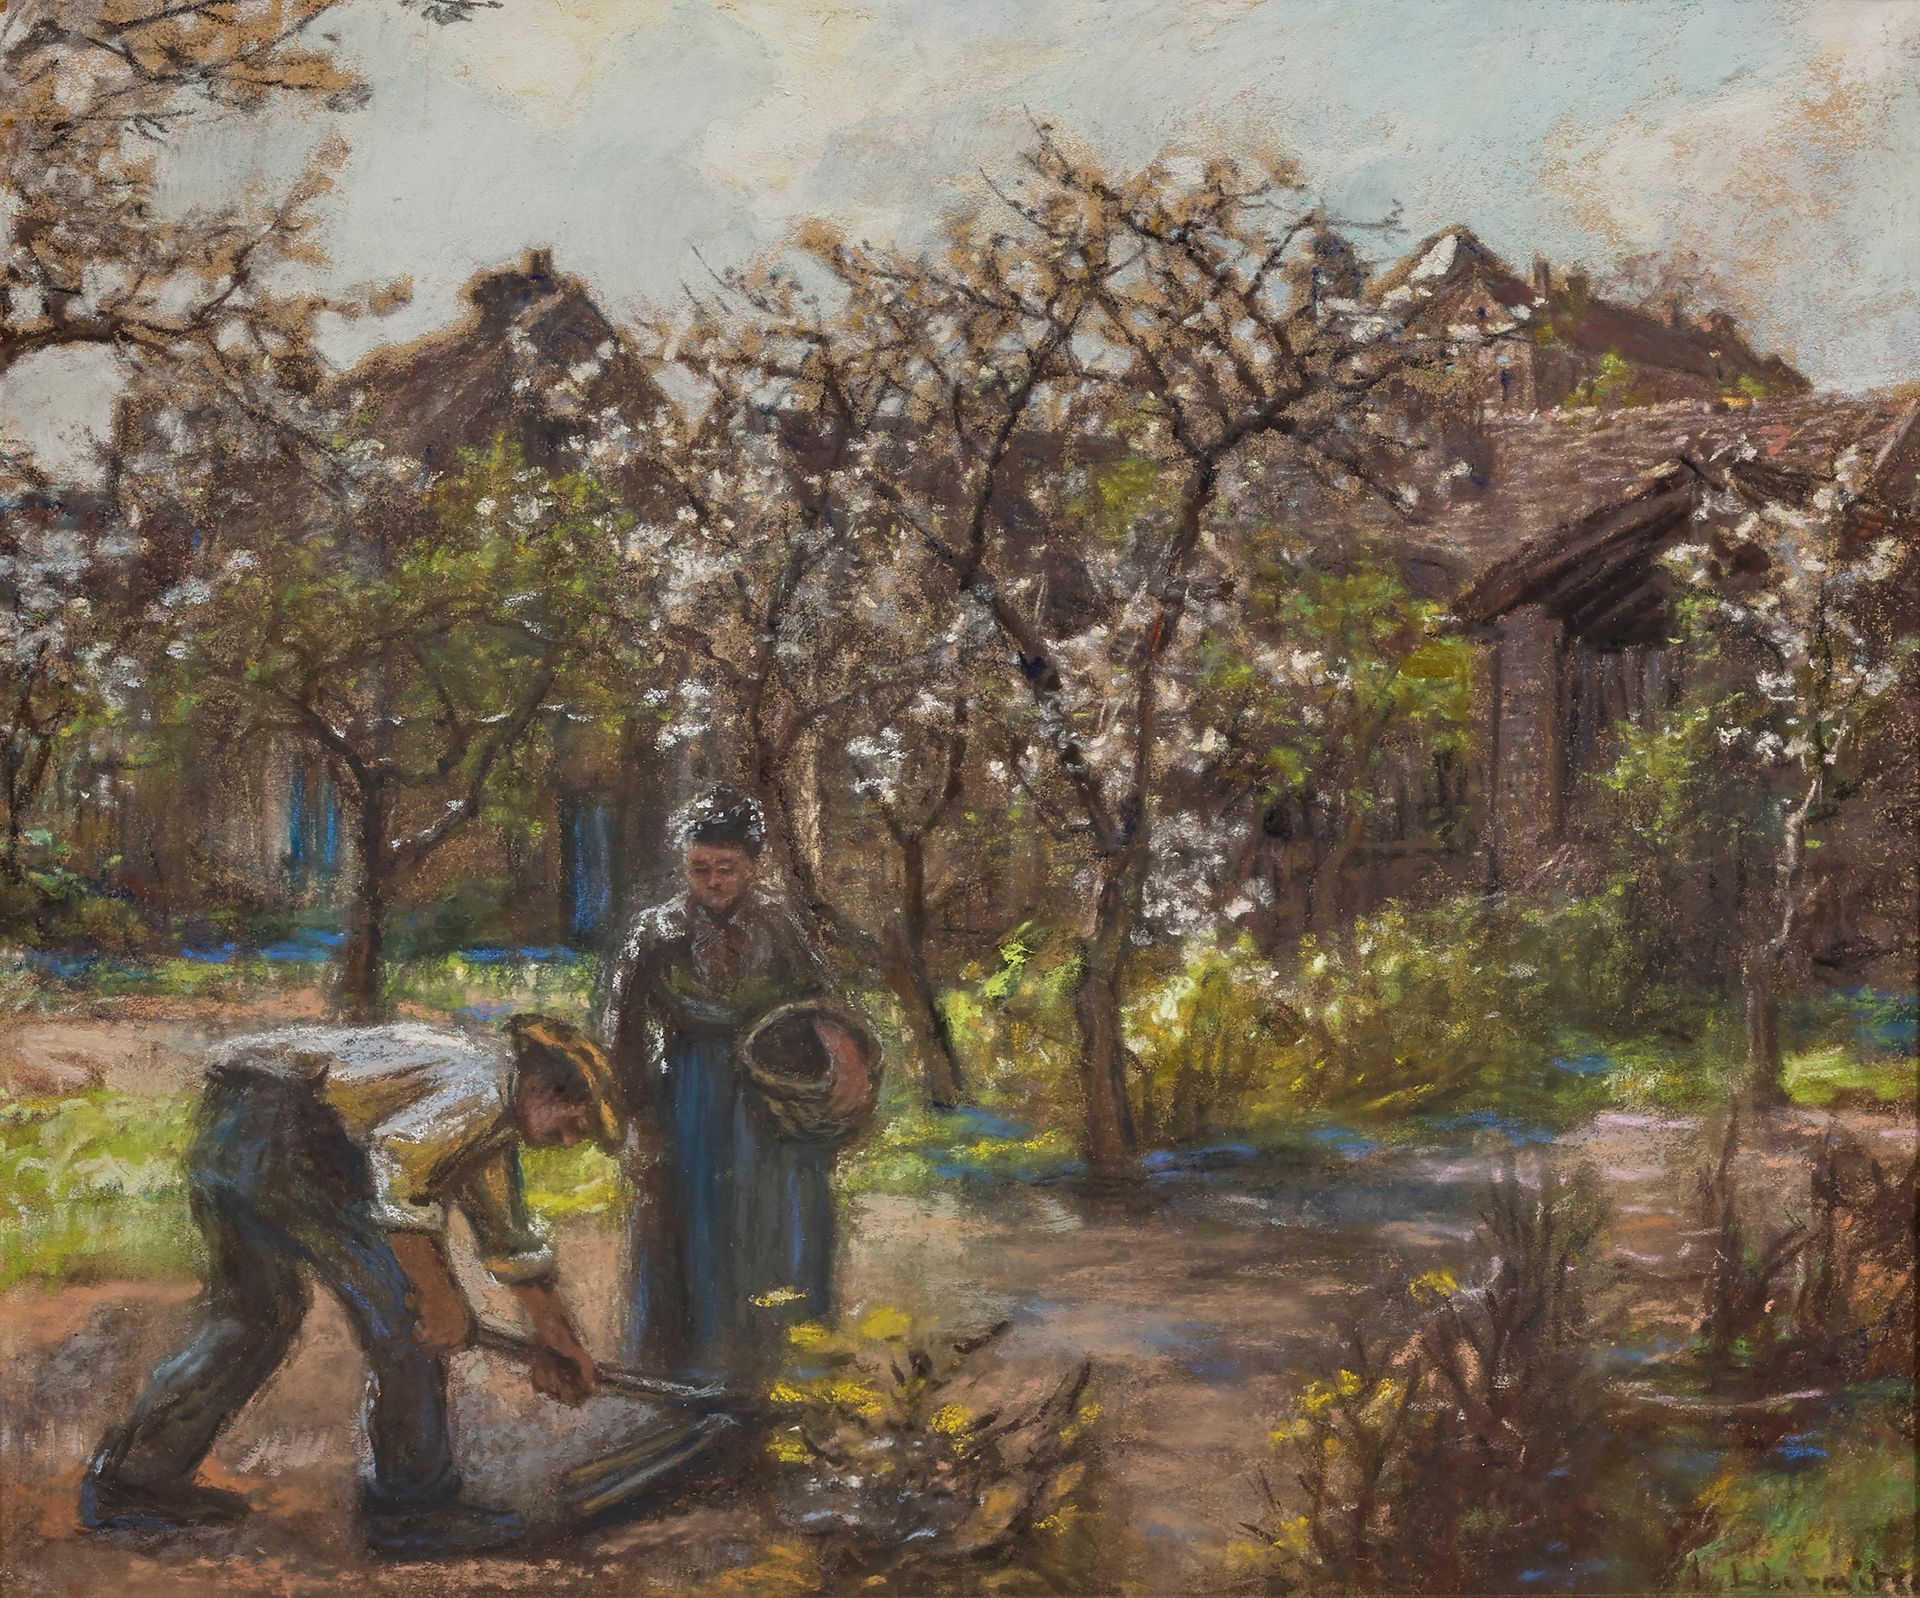 Léon Augustin LHERMITTE (1844-1925) 


Plantación de patatas



Pastel sobre pap&hellip;